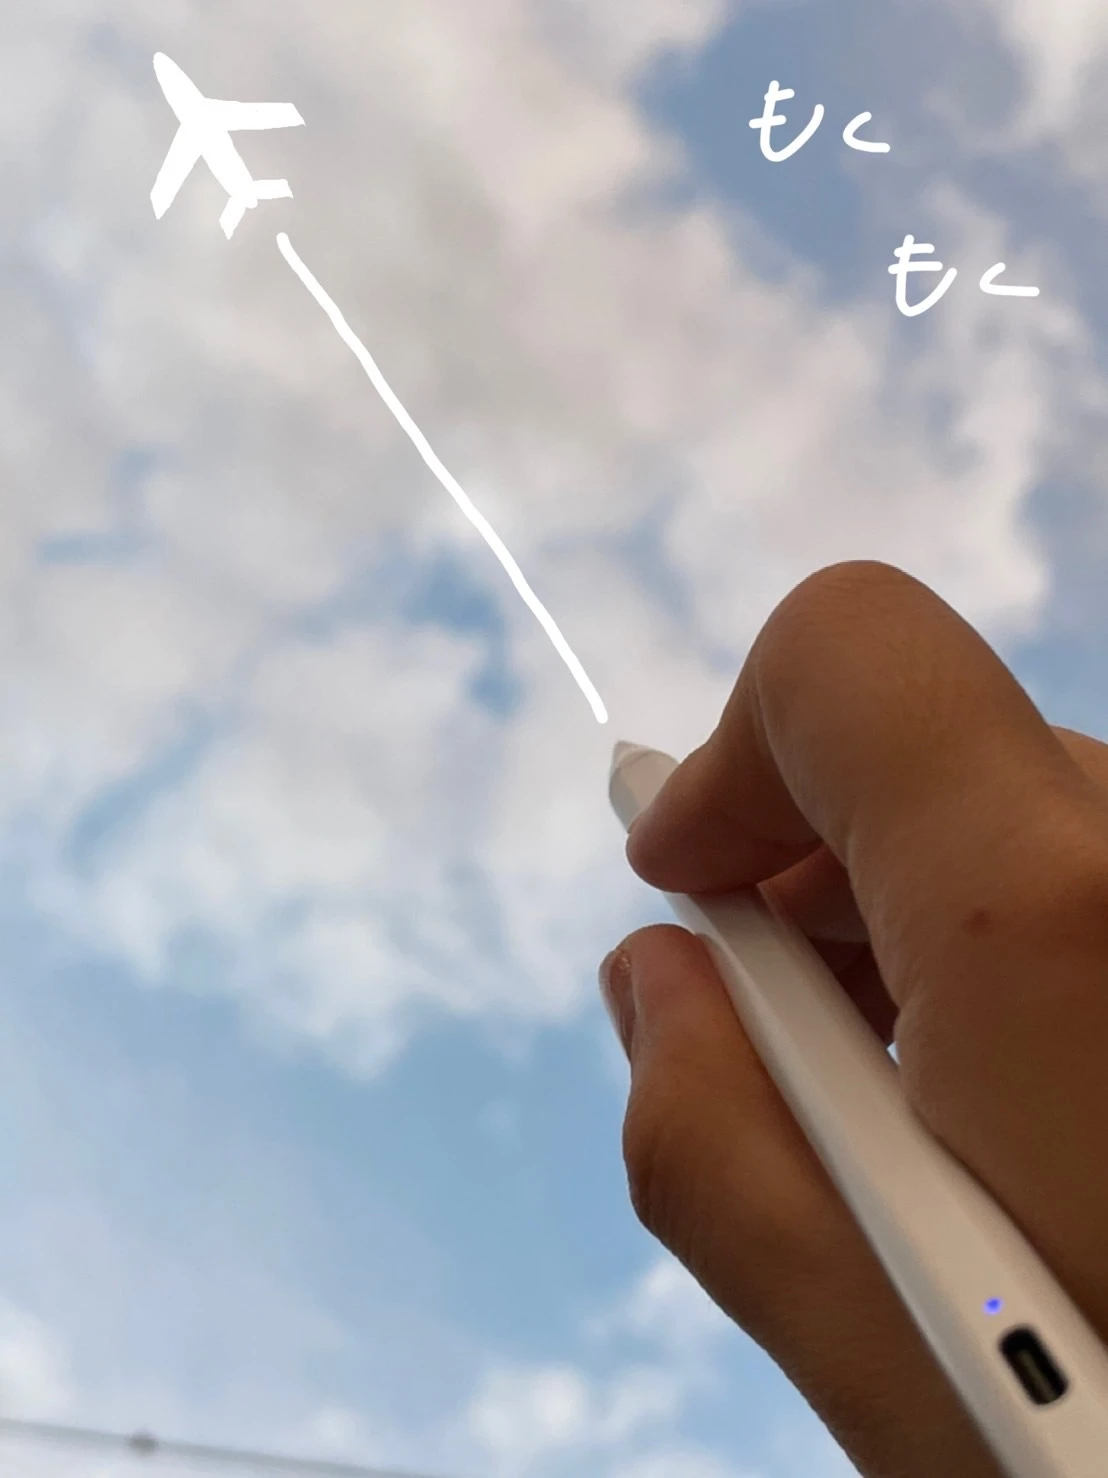 空を写した写真に、飛行機雲のイラストを描いた様子